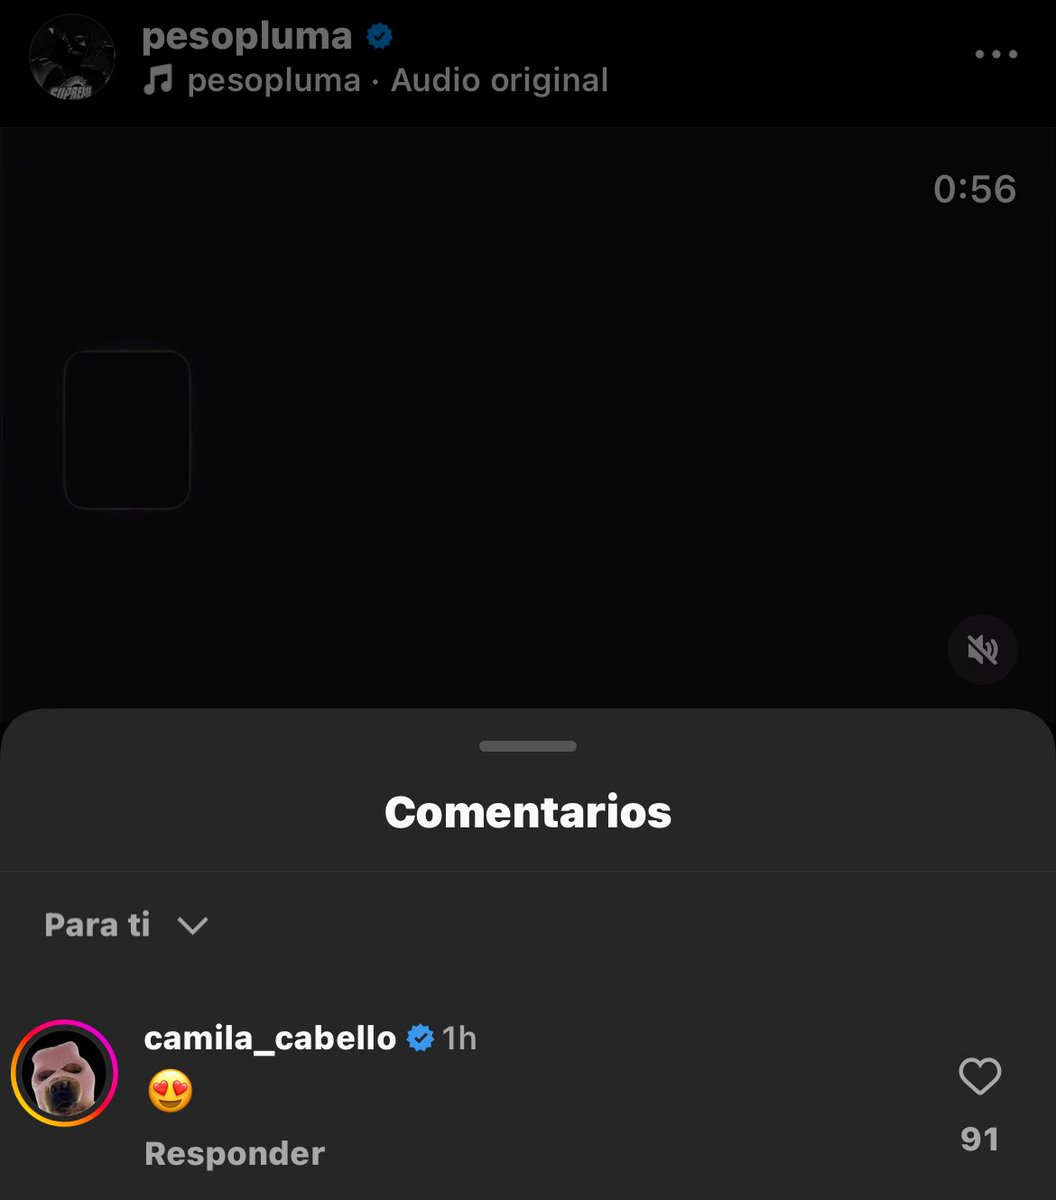 Camila Cabello vía comentarios de Instagram.